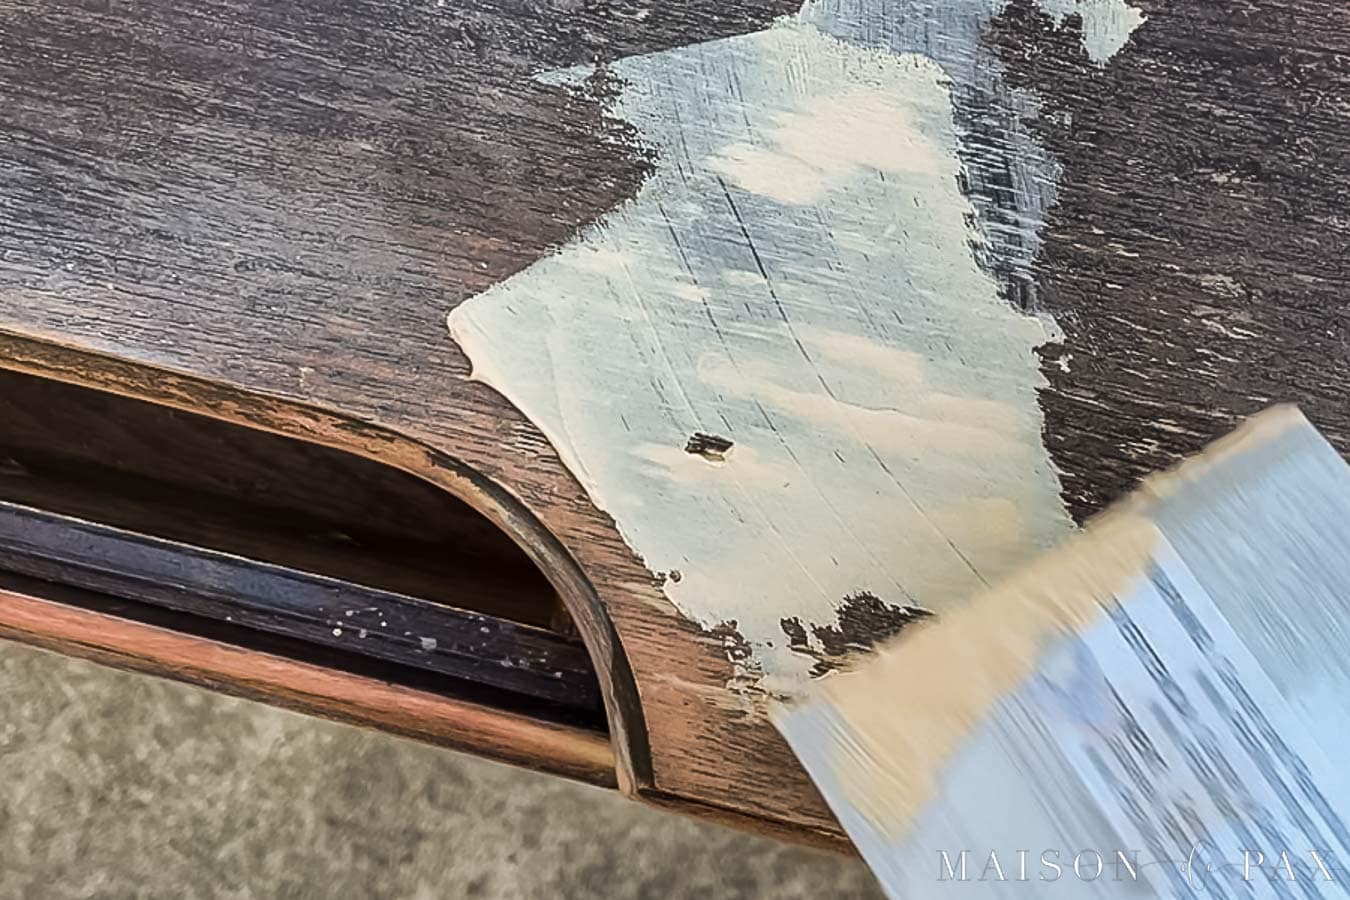 using wood filler on damaged desktop